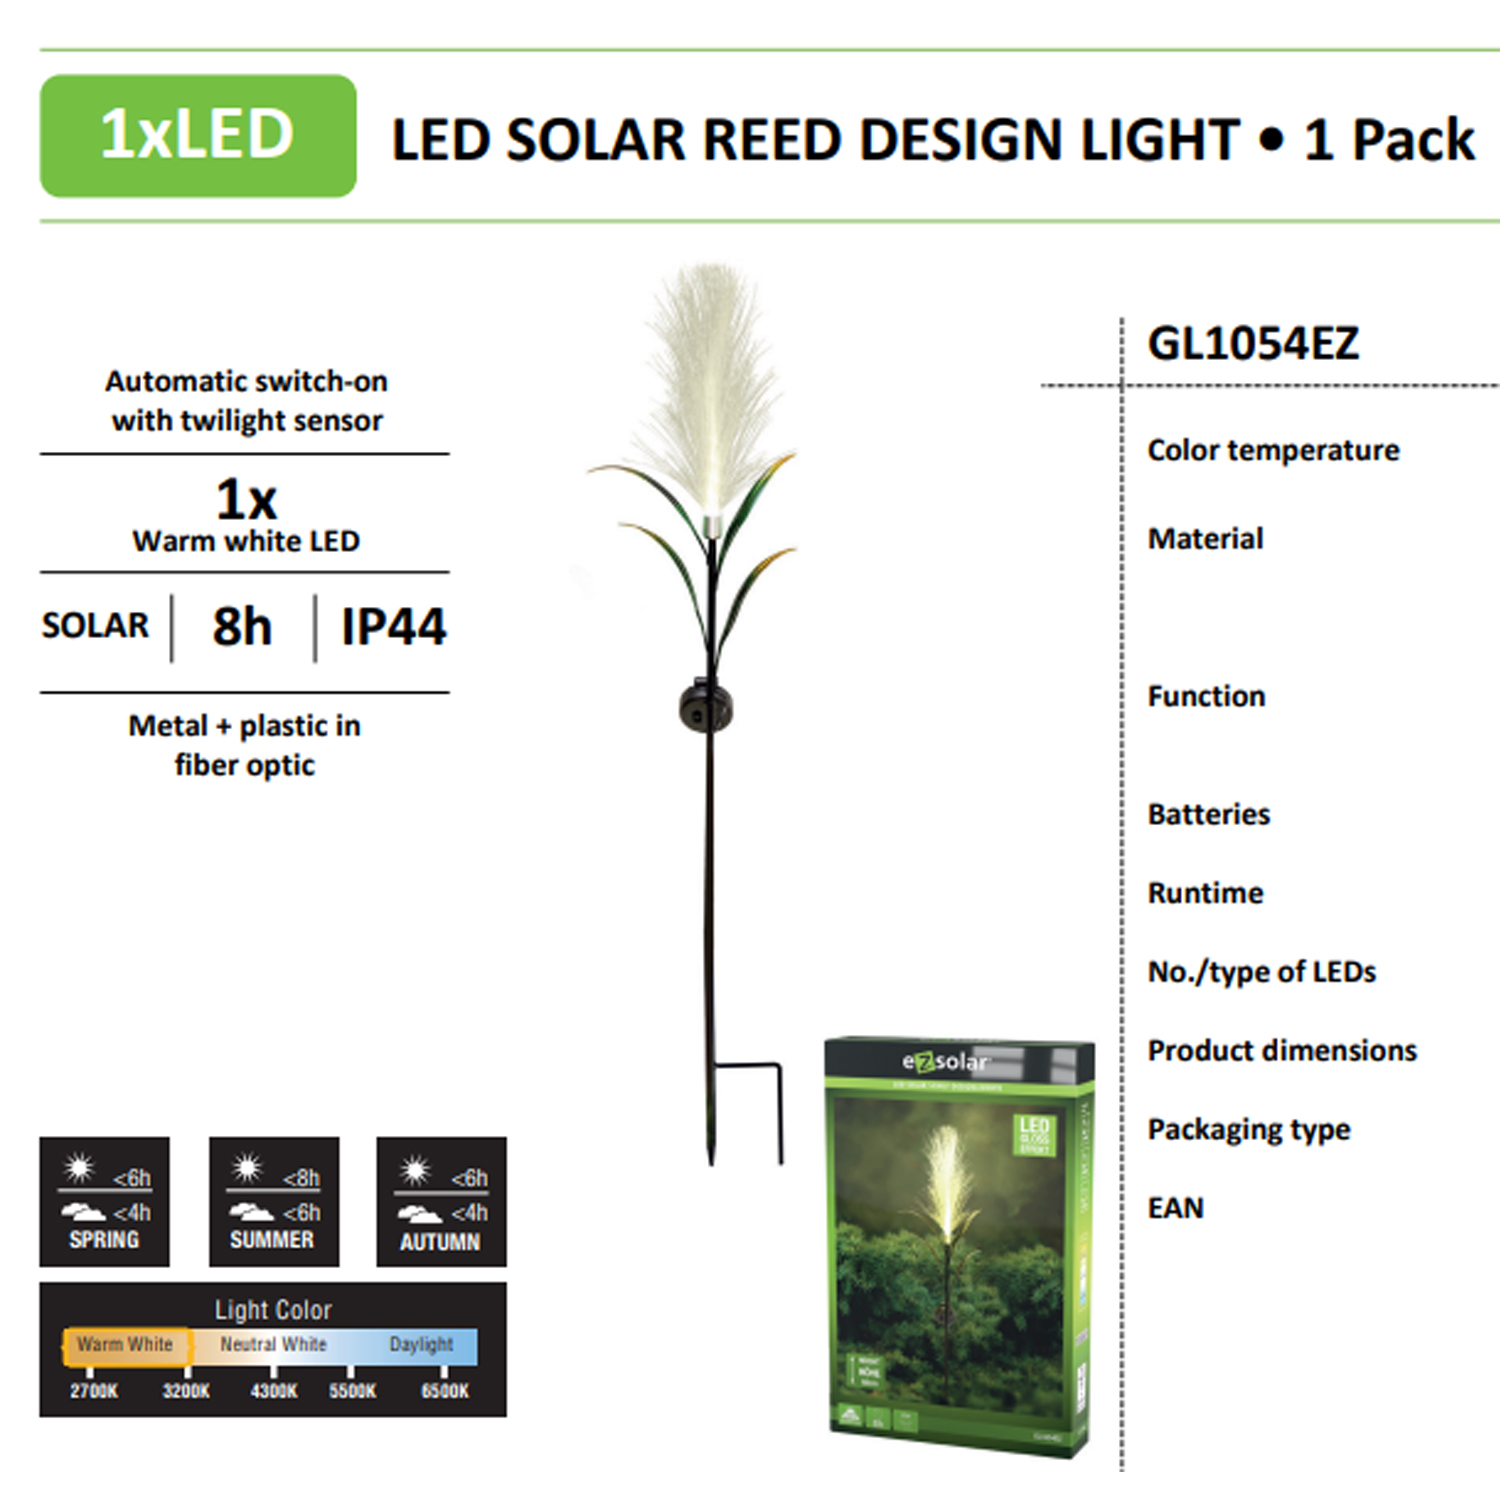 LED Solar Gartenlicht im Schilf Design ideal für Terrasse, Balkon und Garten